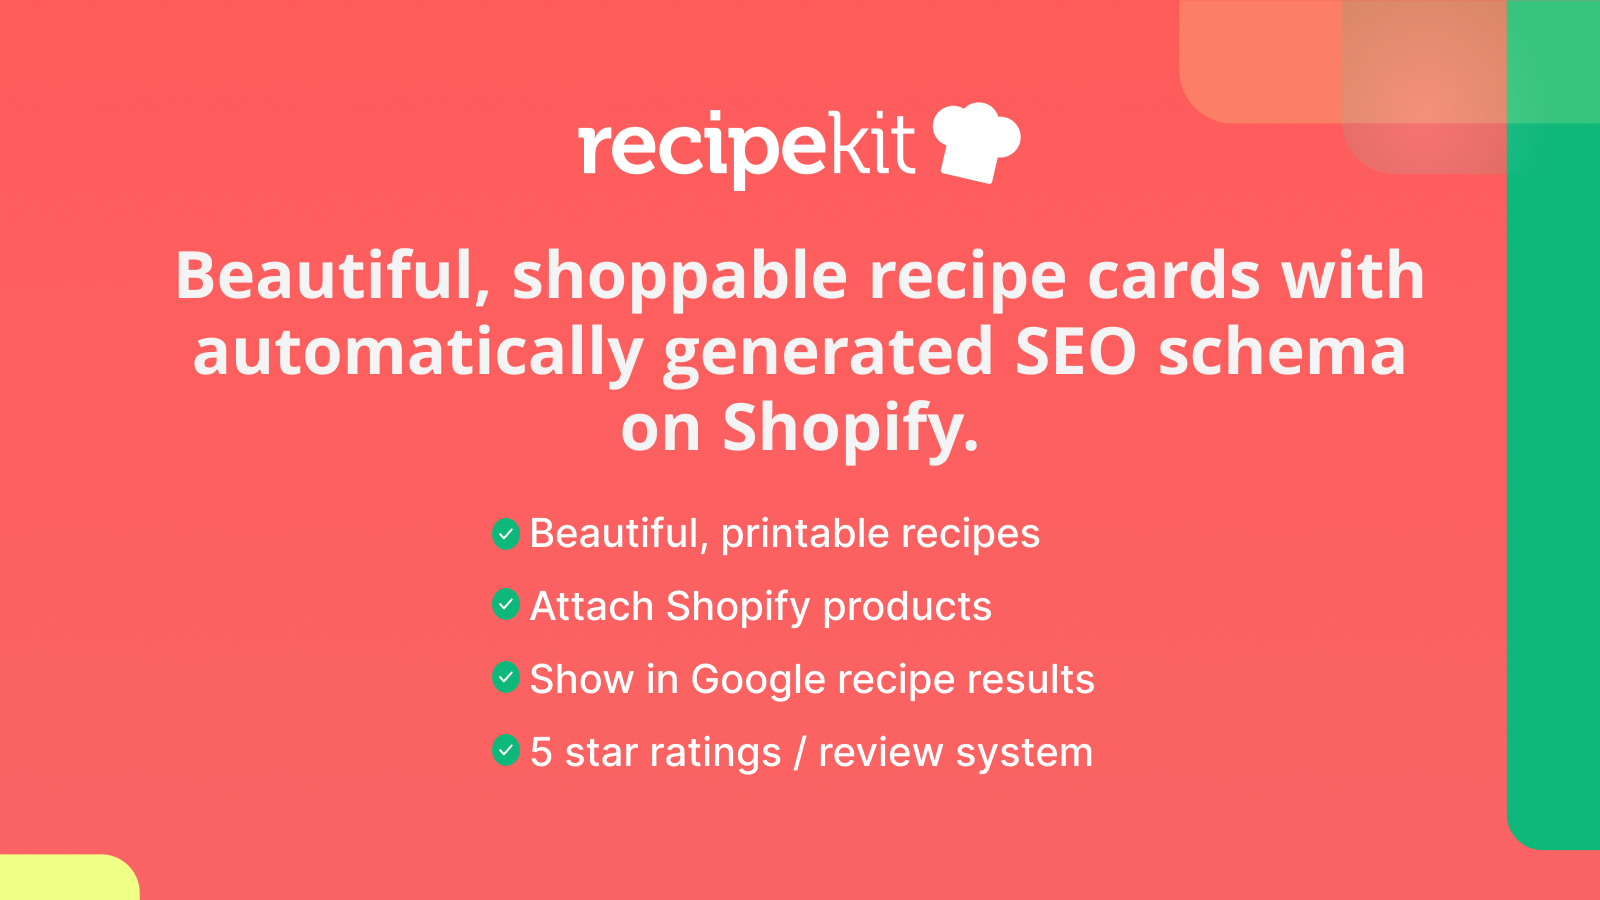 Vackra, shoppningsbara receptkort på din Shopify-butiksblogg